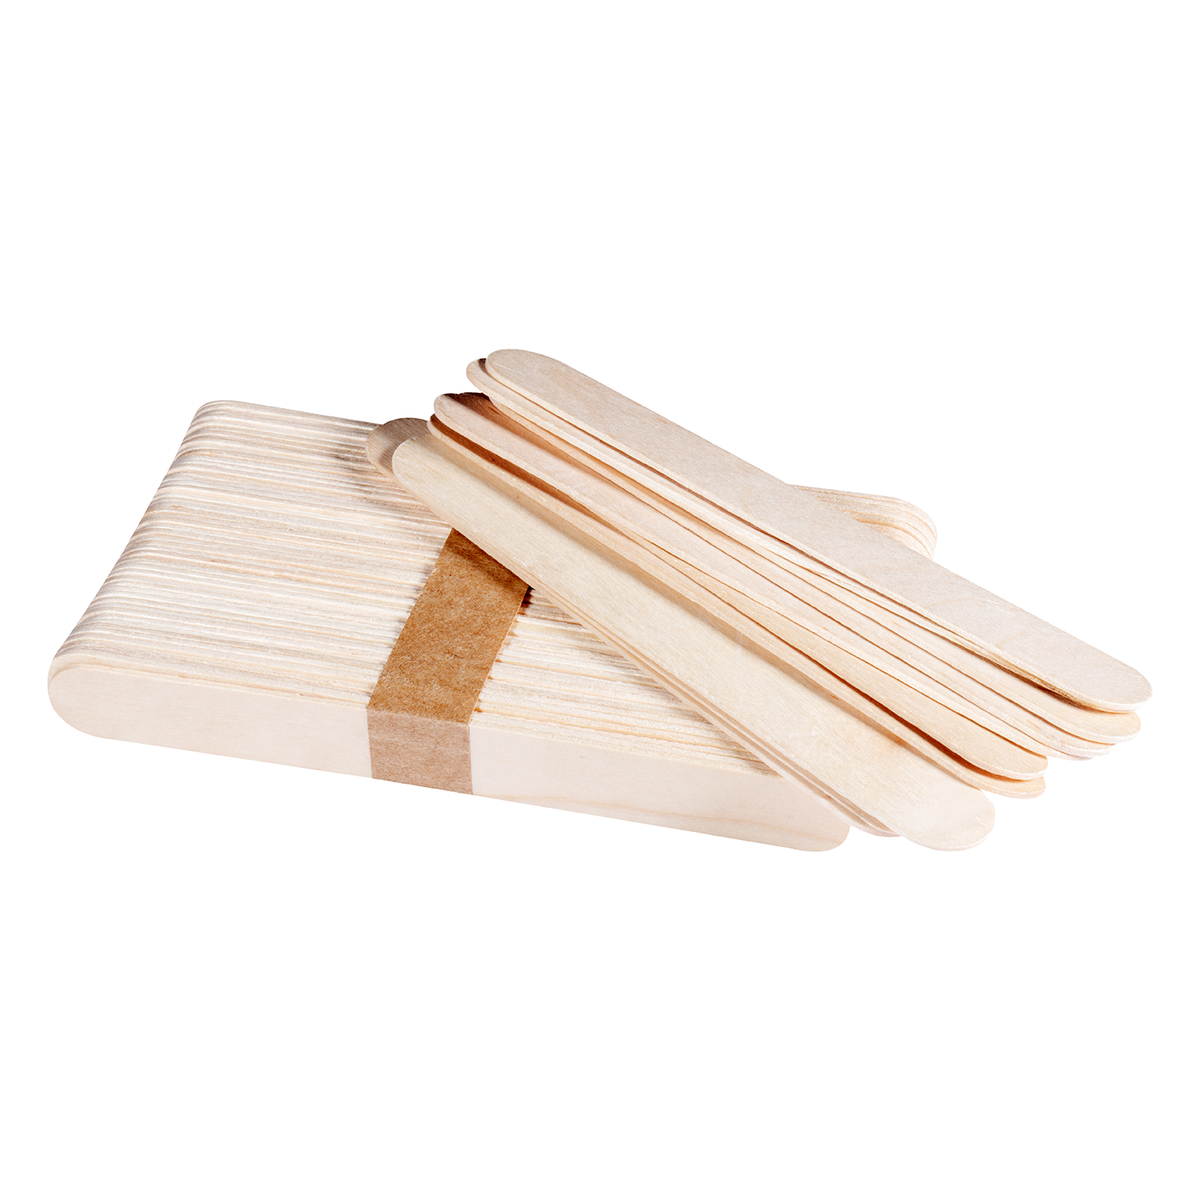 100Pcs Wood Wax Spatulas Waxing Applicator Sticks Wooden Wax